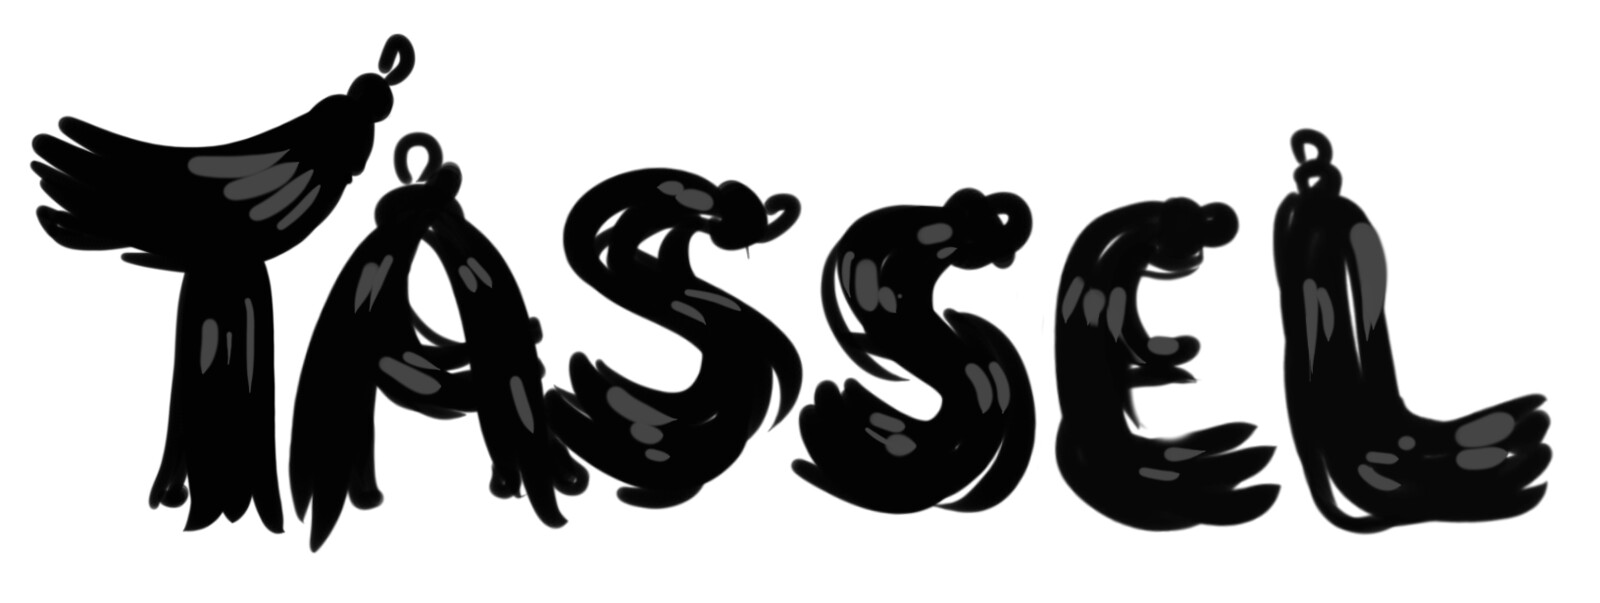 Tassel game logo